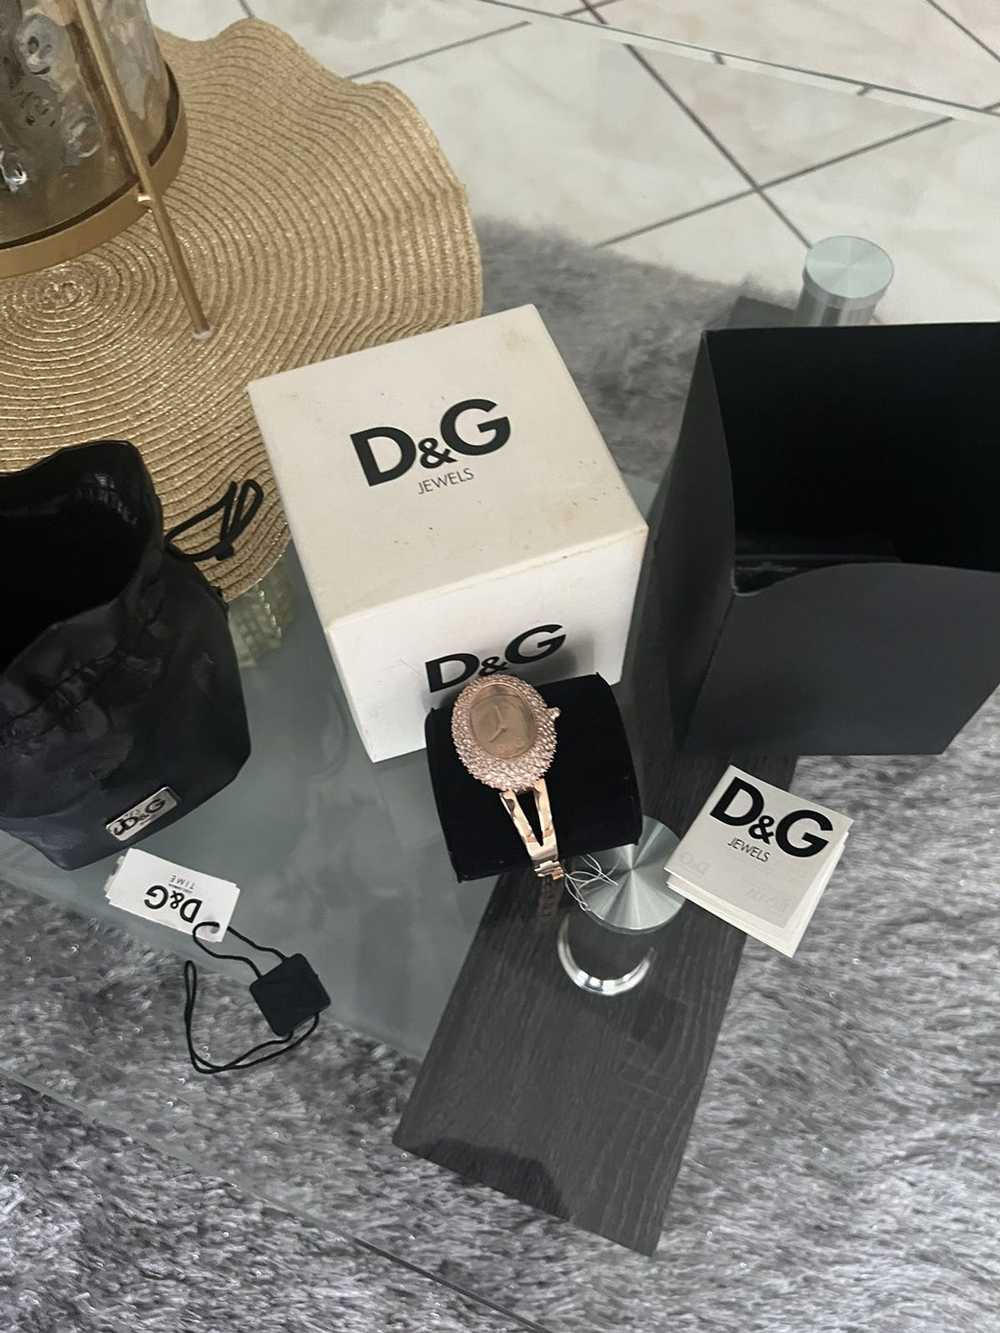 Dolce & Gabbana Woman’s Dolice & Gabana watch - image 3